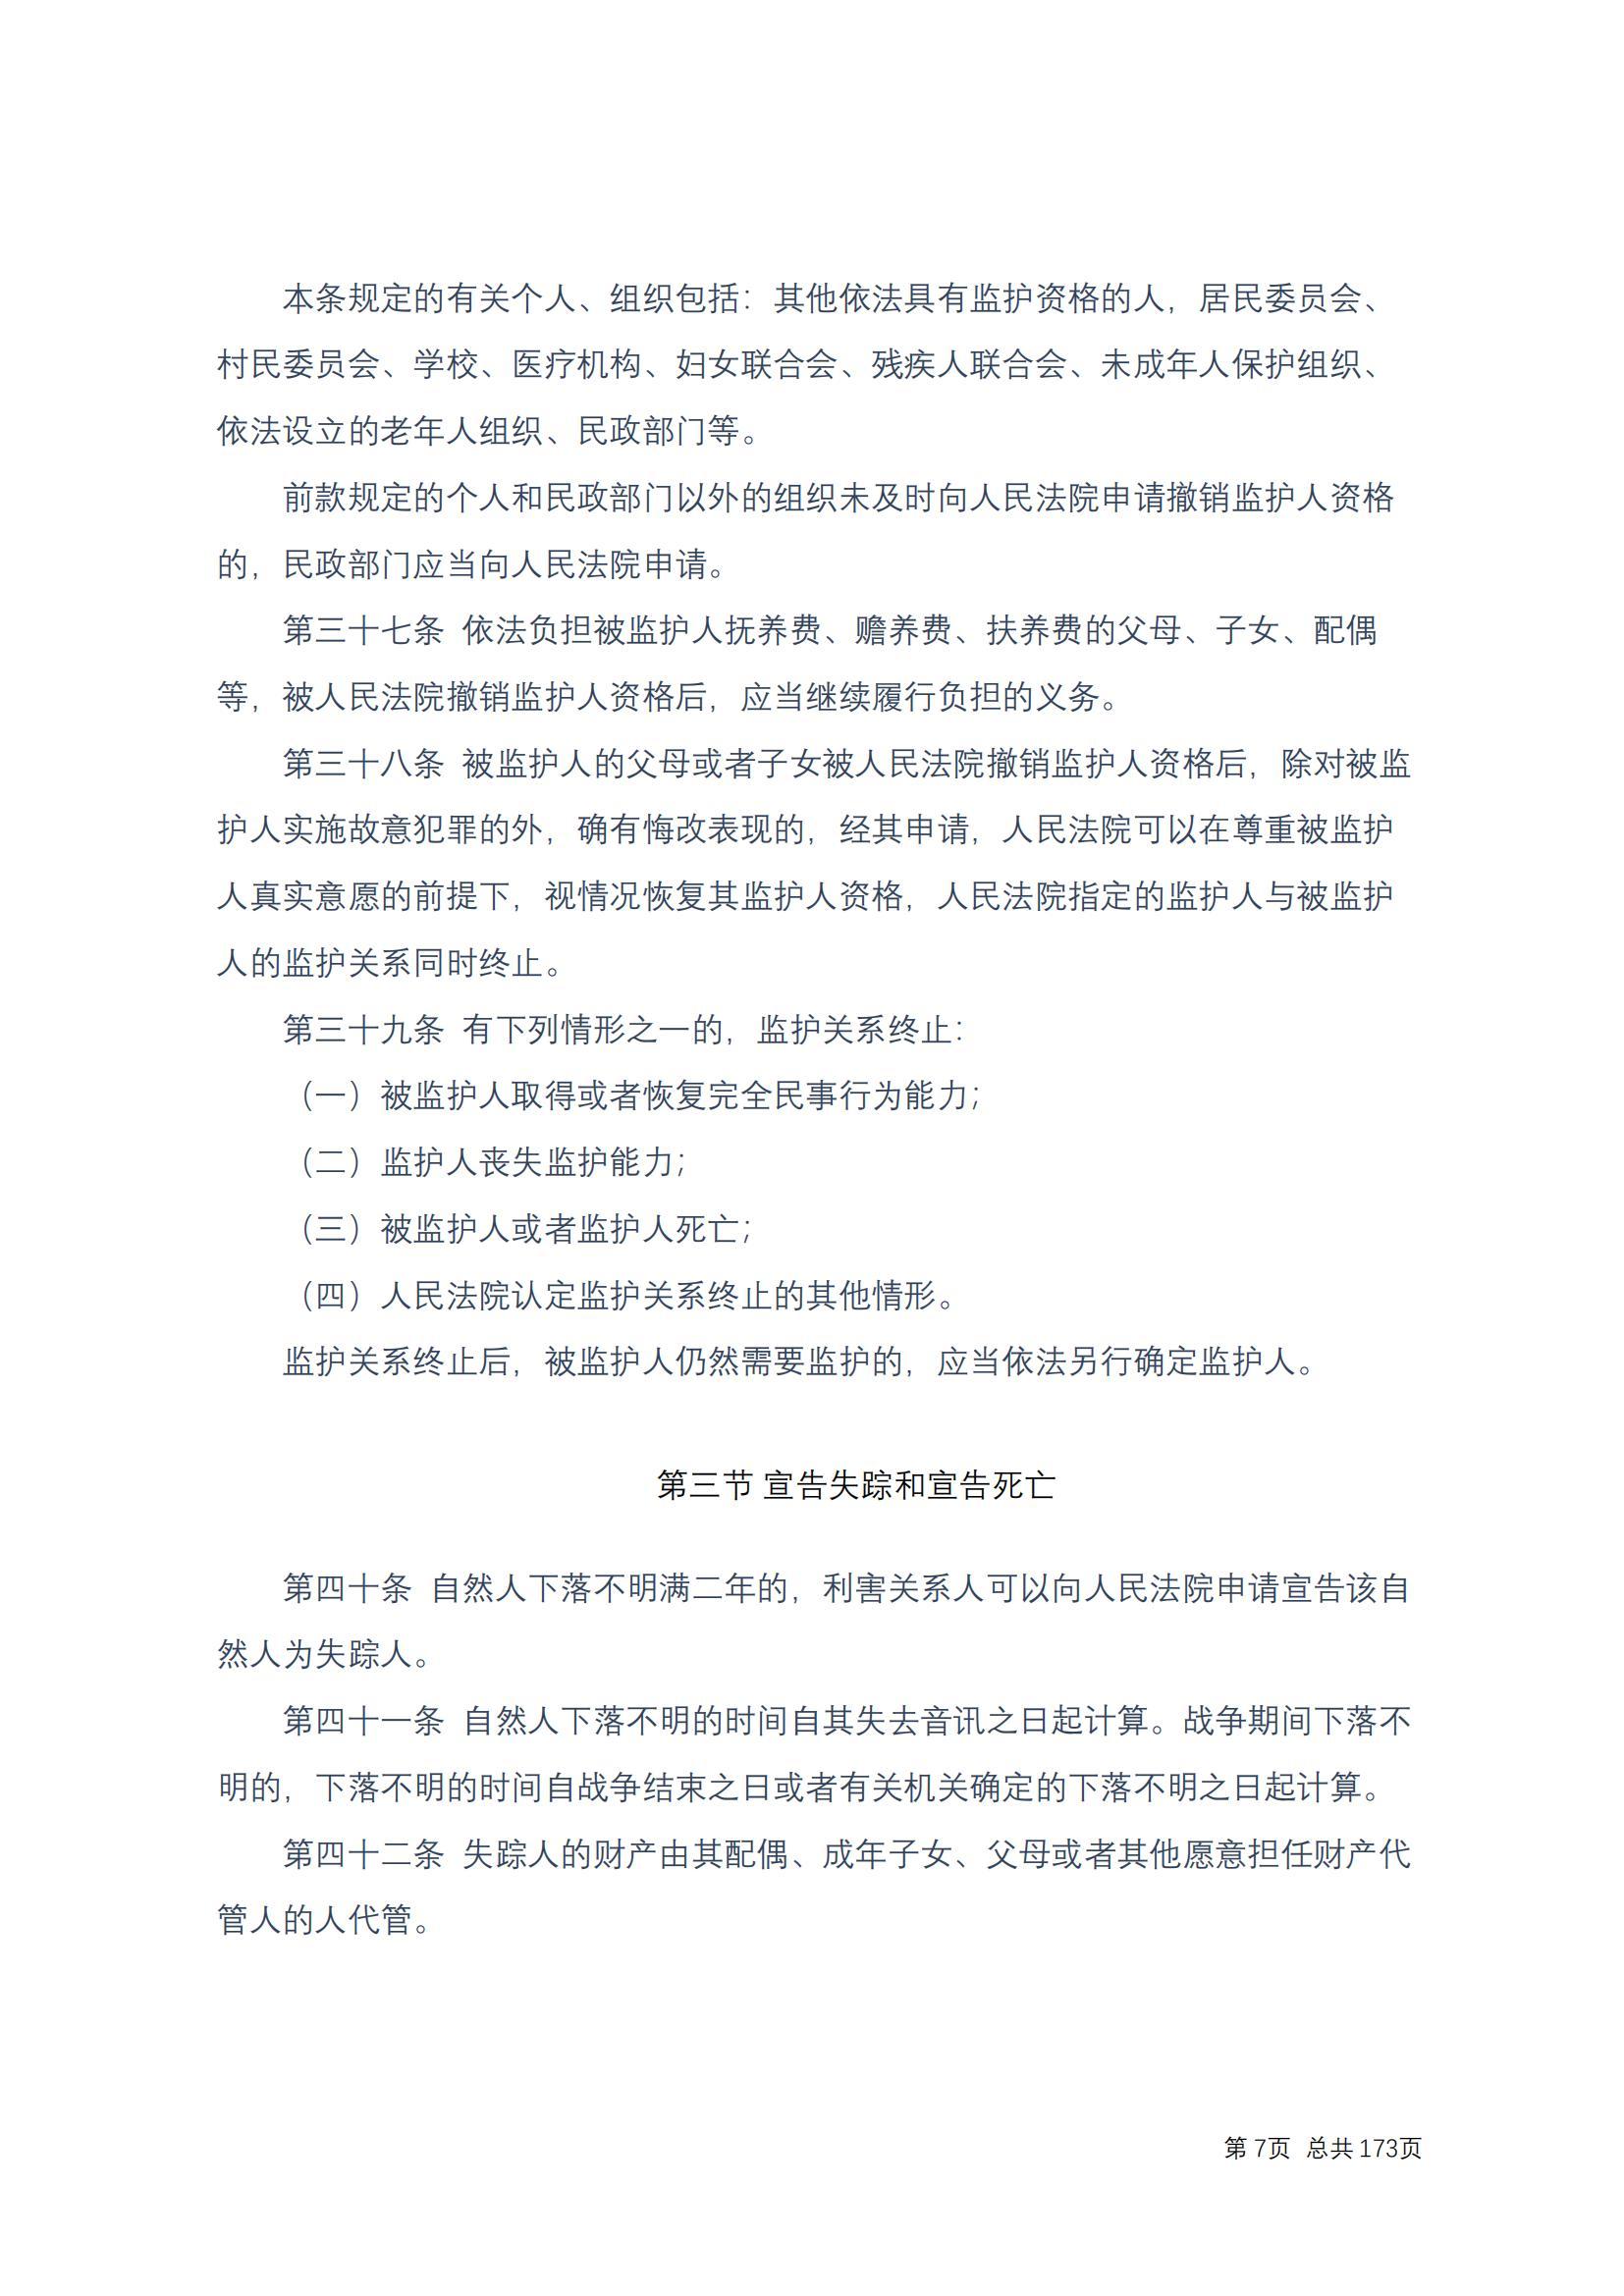 中华人民共和国民法典 修改过_06